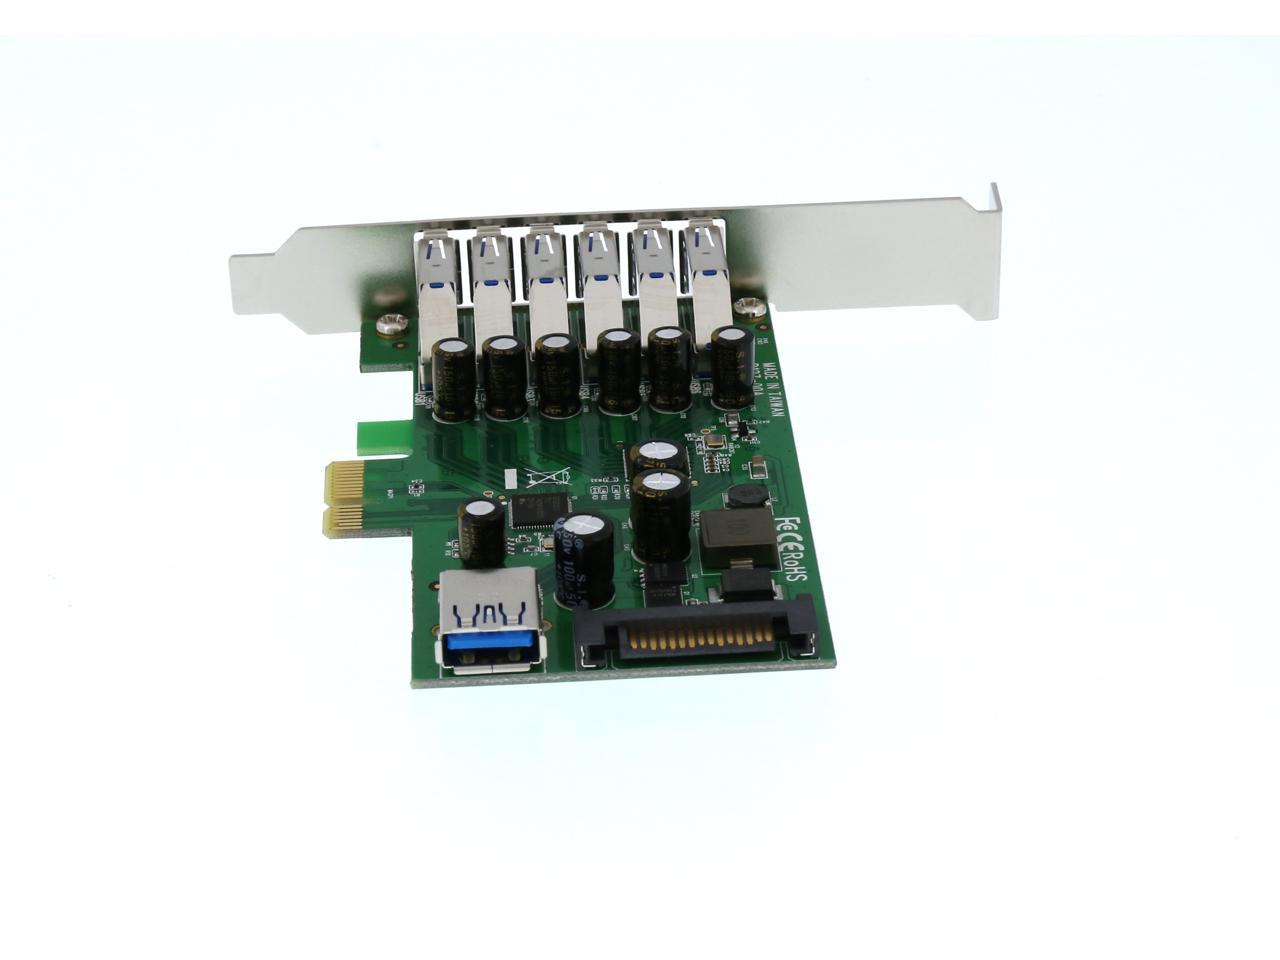 7 Puertos USB 3.0 Perfil bajo o Completo Adaptador Tarjeta PCI Express StarTech.com PEXUSB3S7 con alimentación SATA 